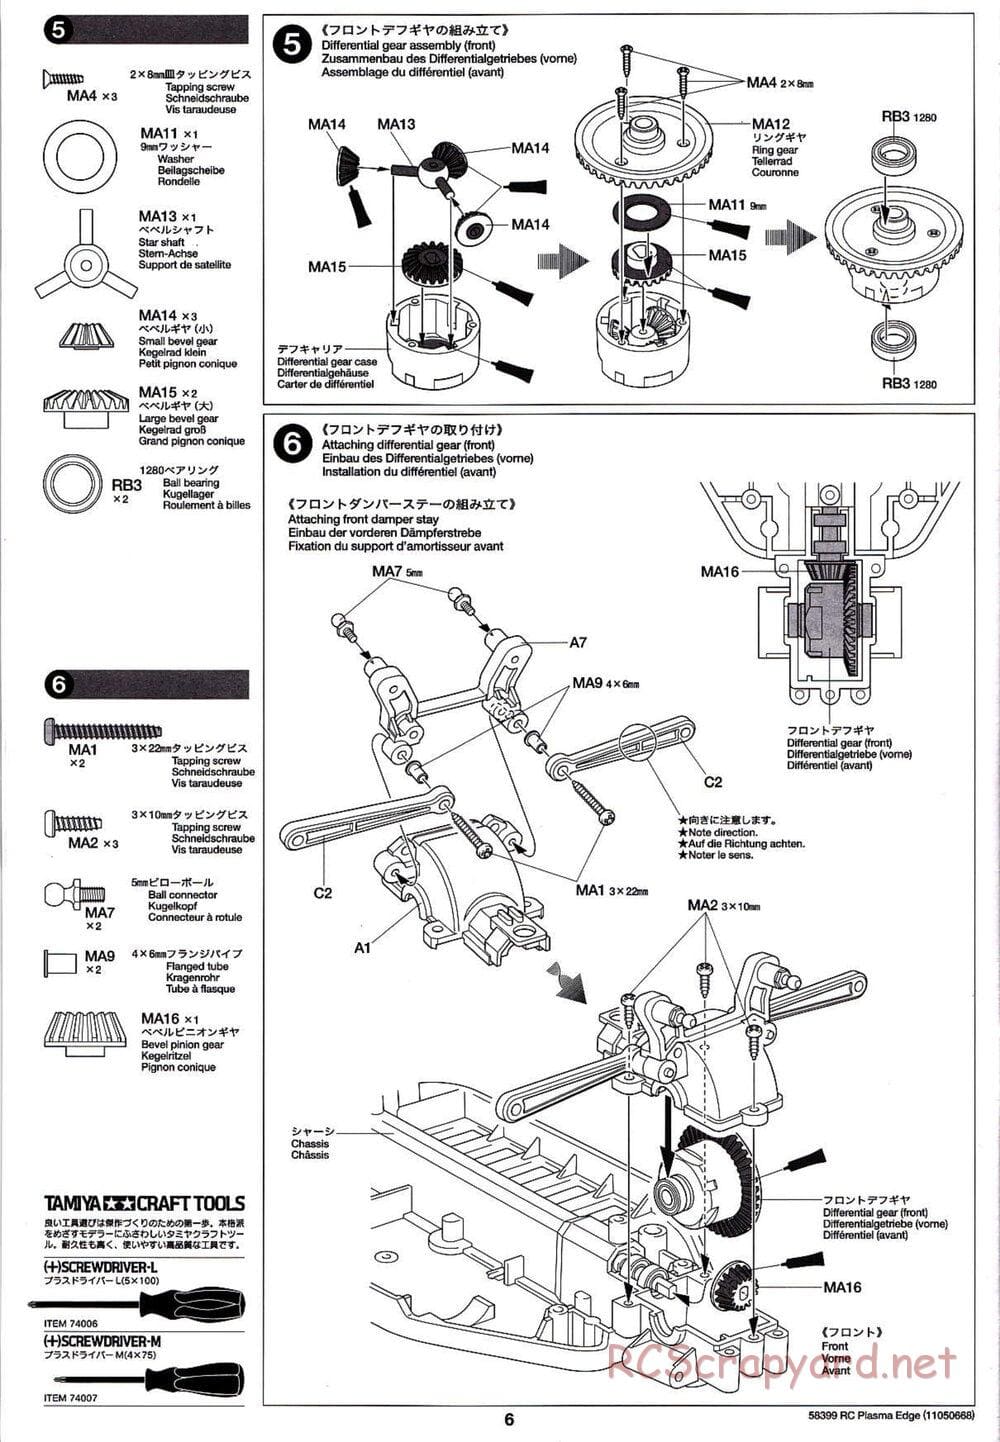 Tamiya - Plasma Edge Chassis - Manual - Page 6